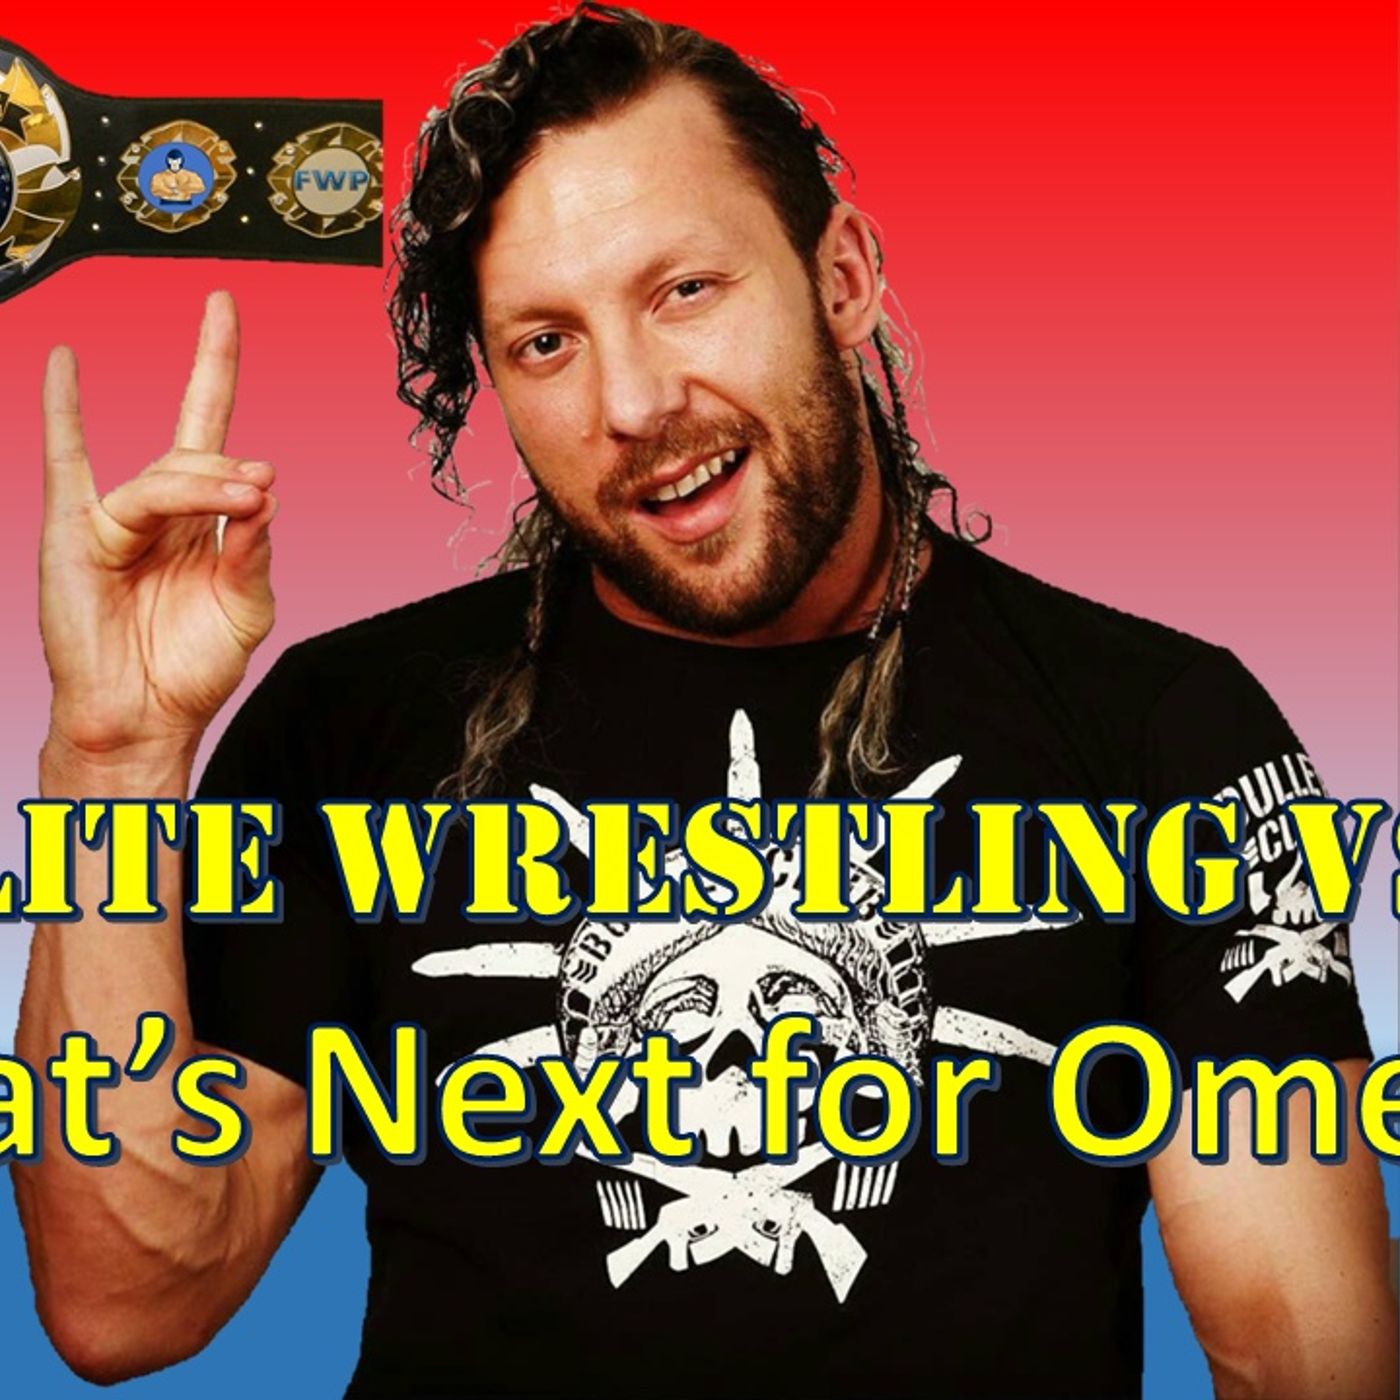 All Elite Wrestling vs WWE - What’s Next for Omega?